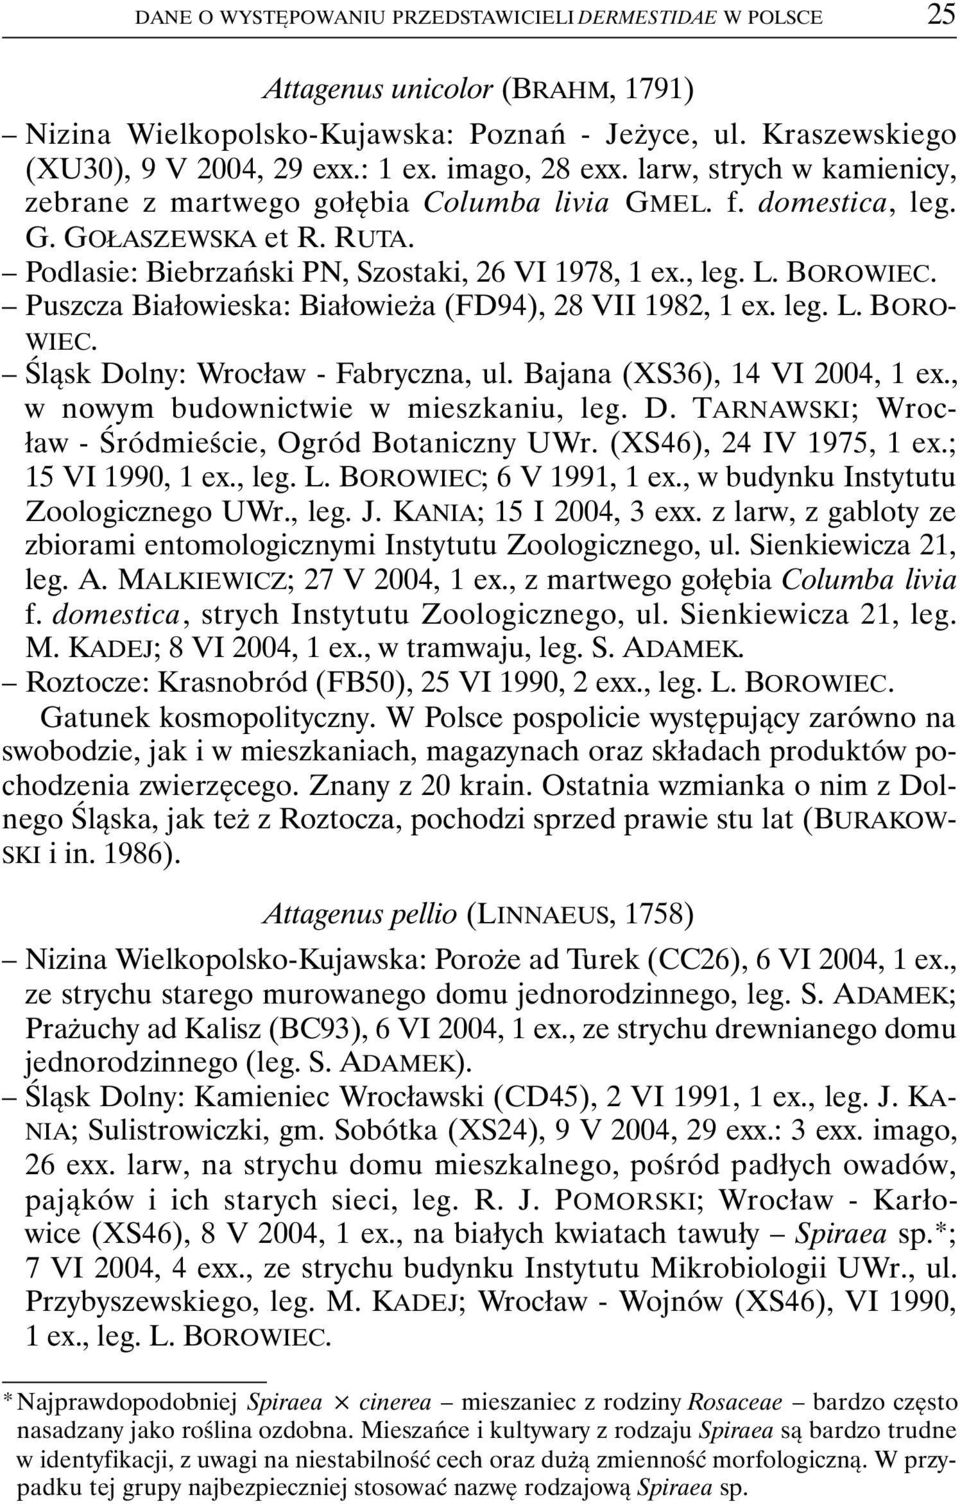 Podlasie: Biebrzański PN, Szostaki, 26 VI 1978, Puszcza Białowieska: Białowieża (FD94), 28 VII 1982, 1 ex. leg. L. BORO- WIEC. Śląsk Dolny: Wrocław - Fabryczna, ul. Bajana (XS36), 14 VI 2004, 1 ex.